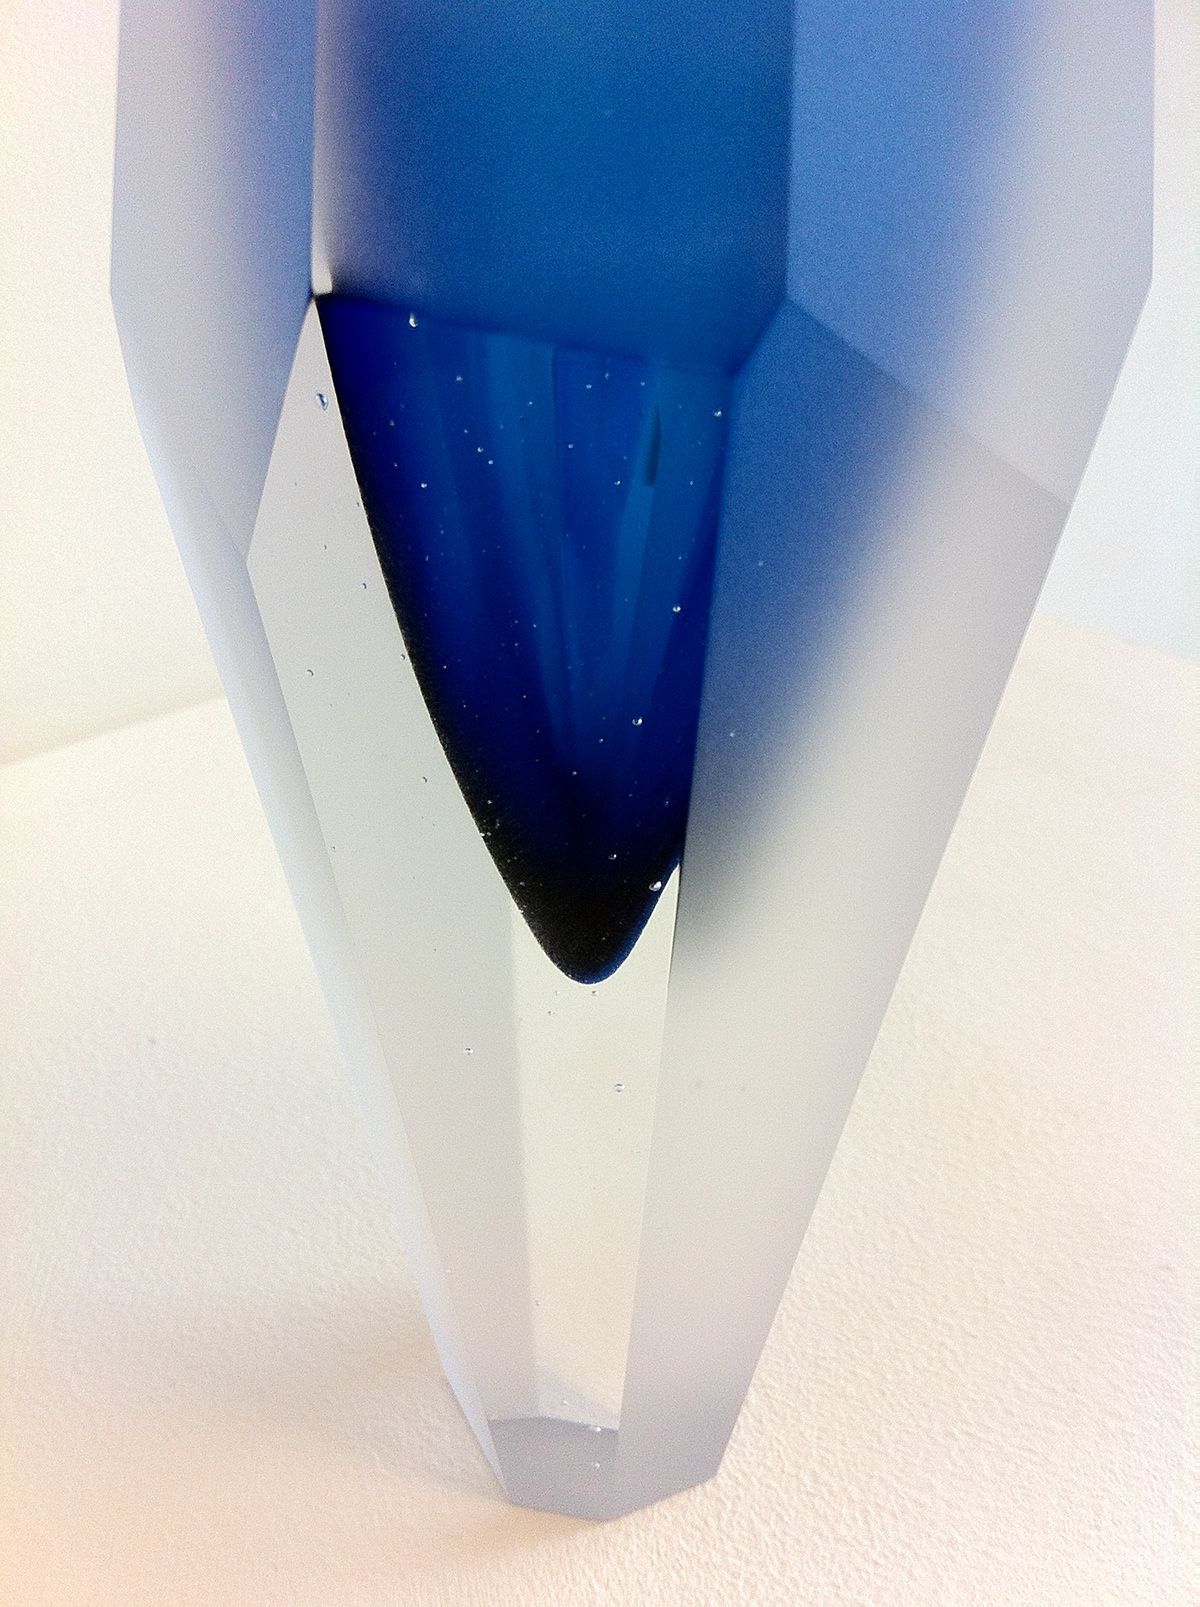 glass glass blowing  blown glass glass art sculptural glass sculpture crystal glass crystal aquamarine